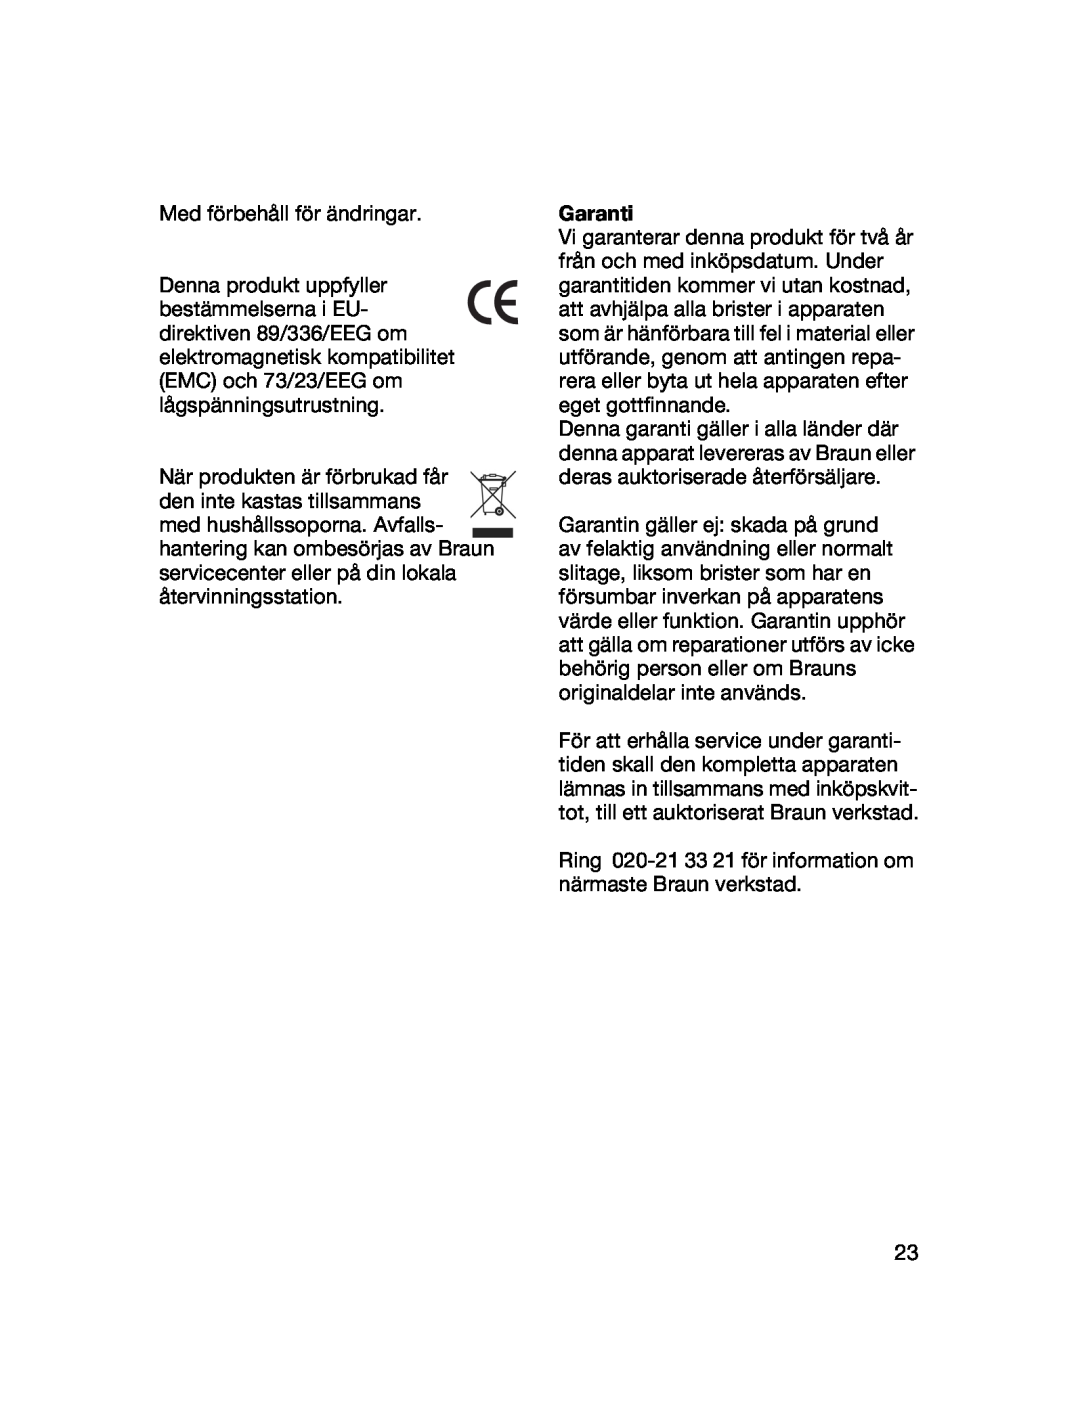 Braun 4041 manual Med förbehåll för ändringar, Garanti, Ring 020-21 33 21 för information om närmaste Braun verkstad 